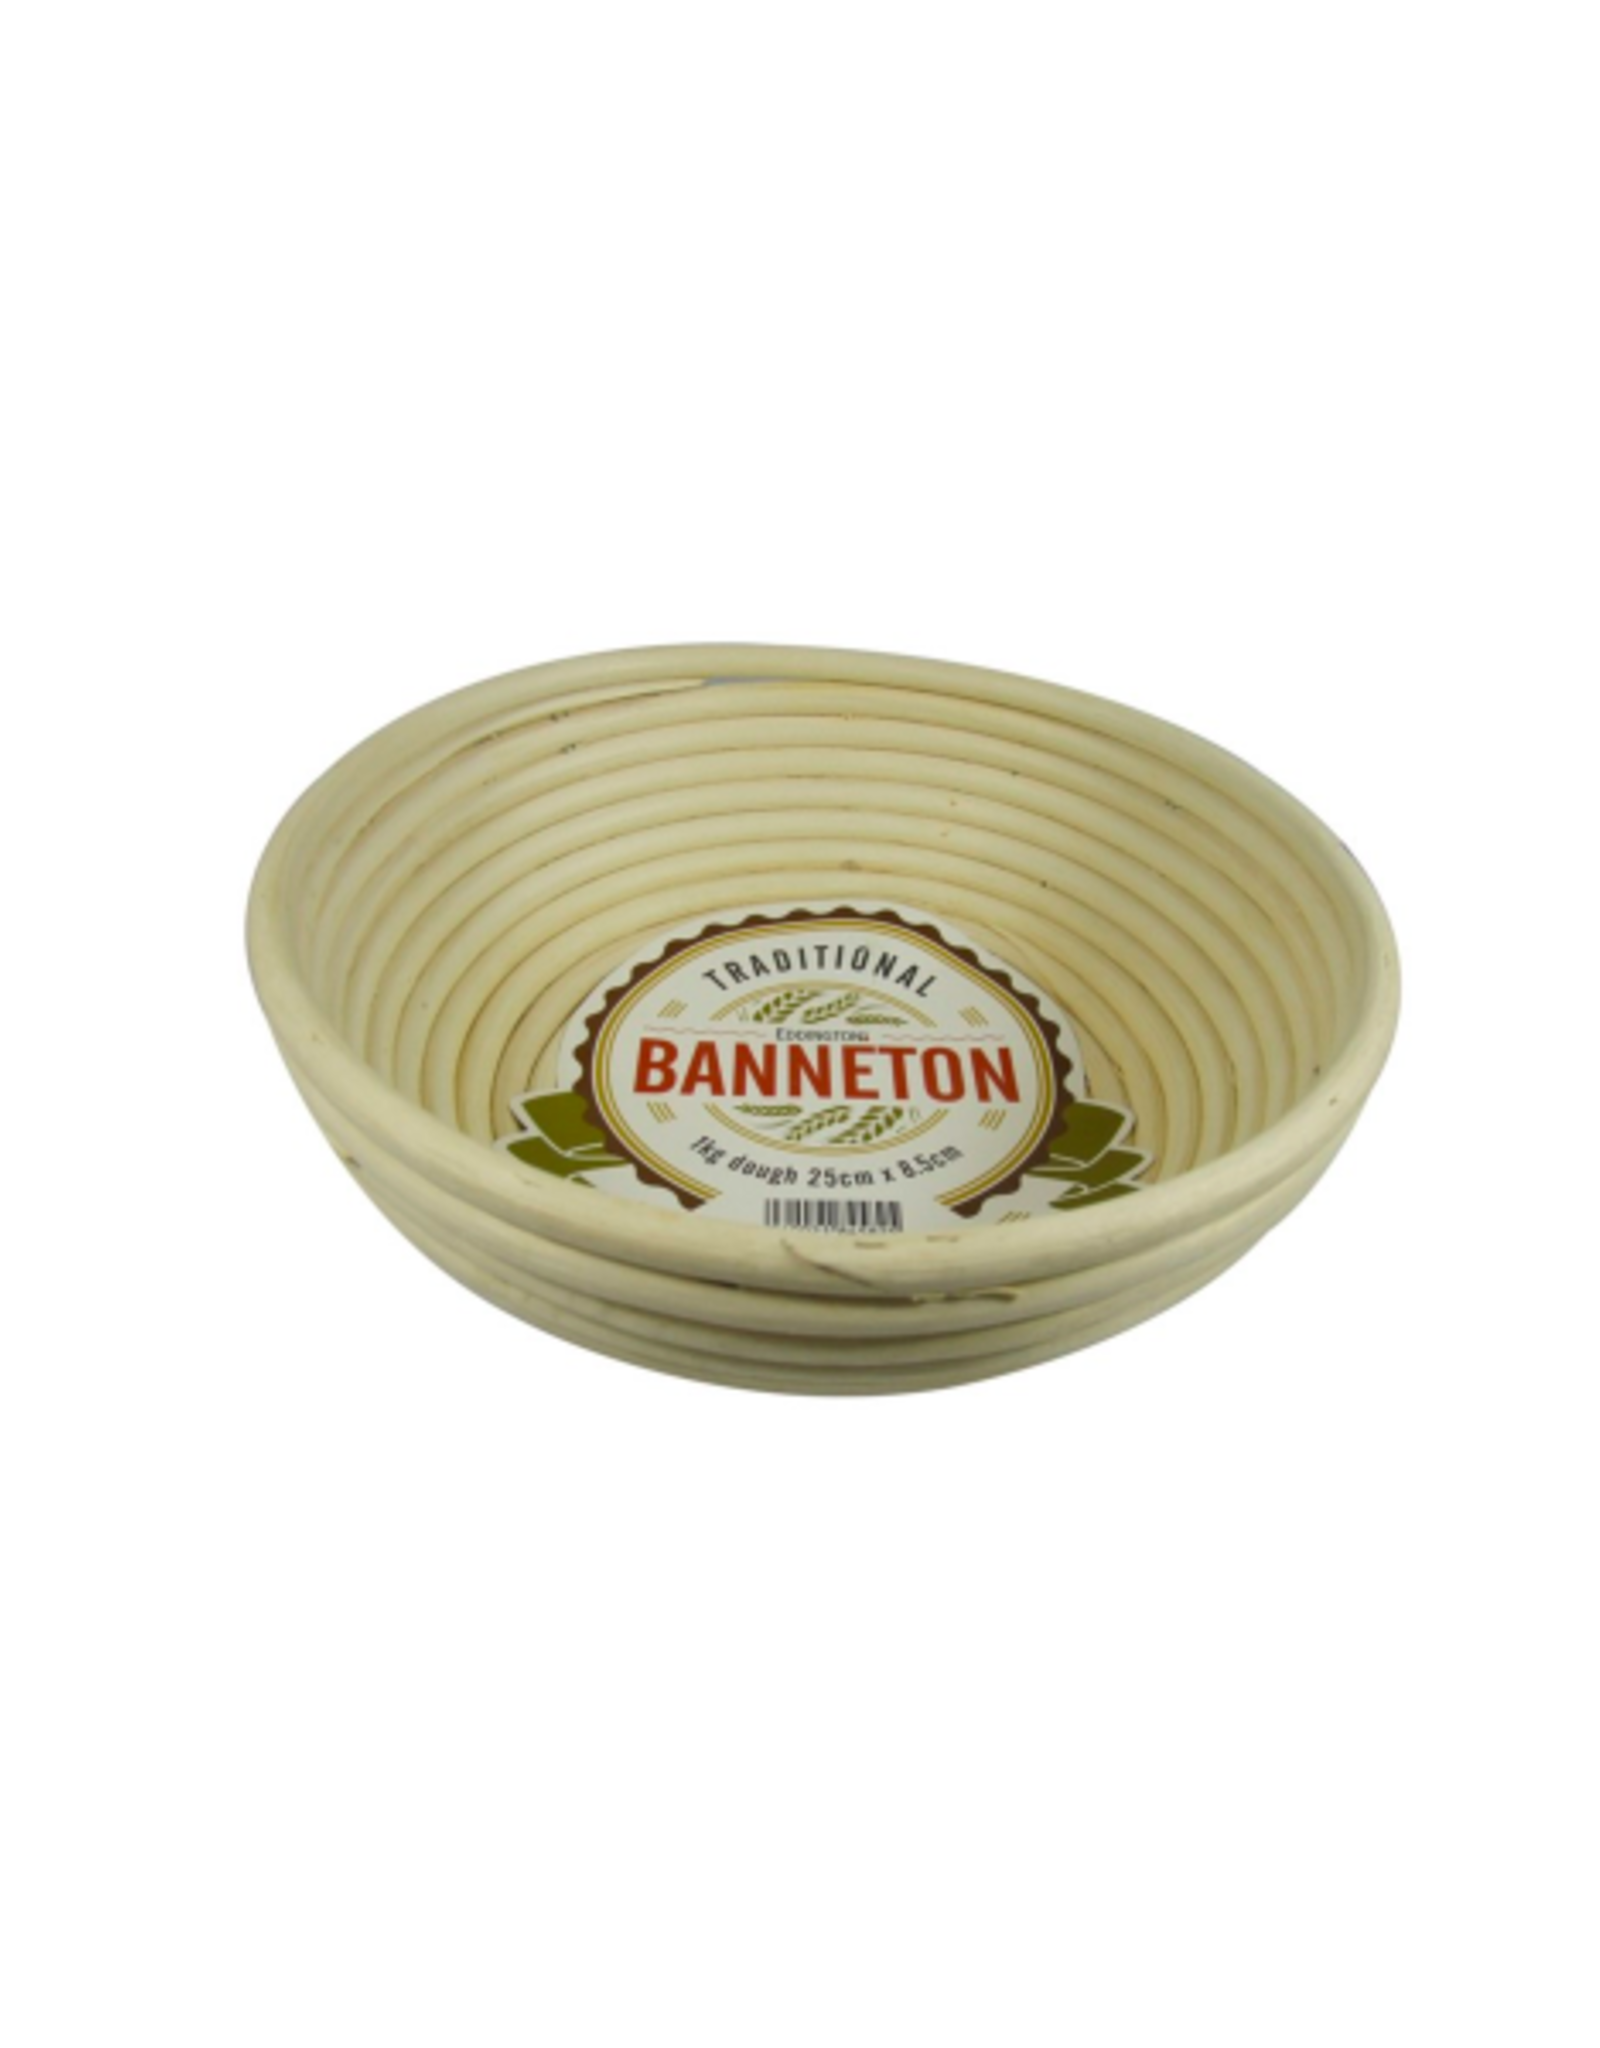 PLE - Banneton Proofing Basket / Round, 10"